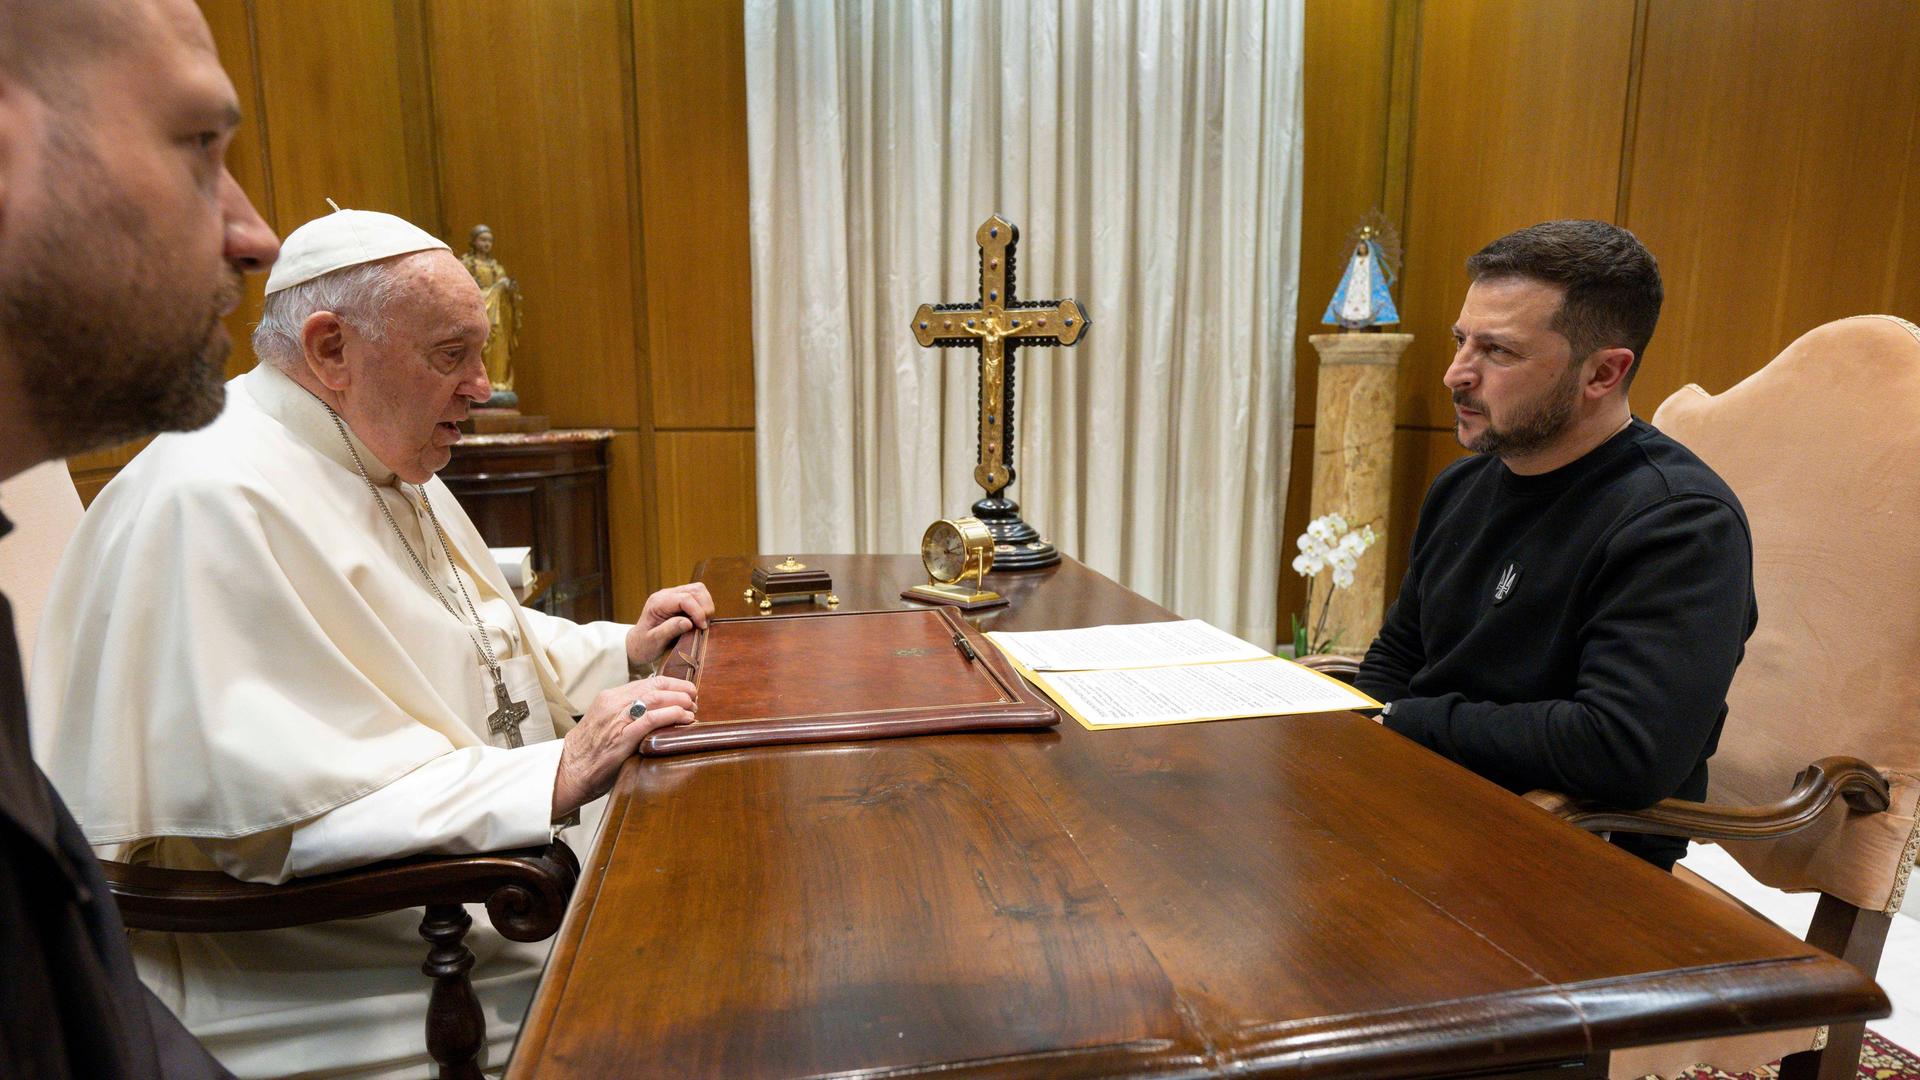 Papst Franziskus sitzt gegenüber dem ukrainischen Präsidenten Wolodymyr Selenskyj an einem dunklen Holztisch. Darauf befindet sich unter anderem ein Kreuz.